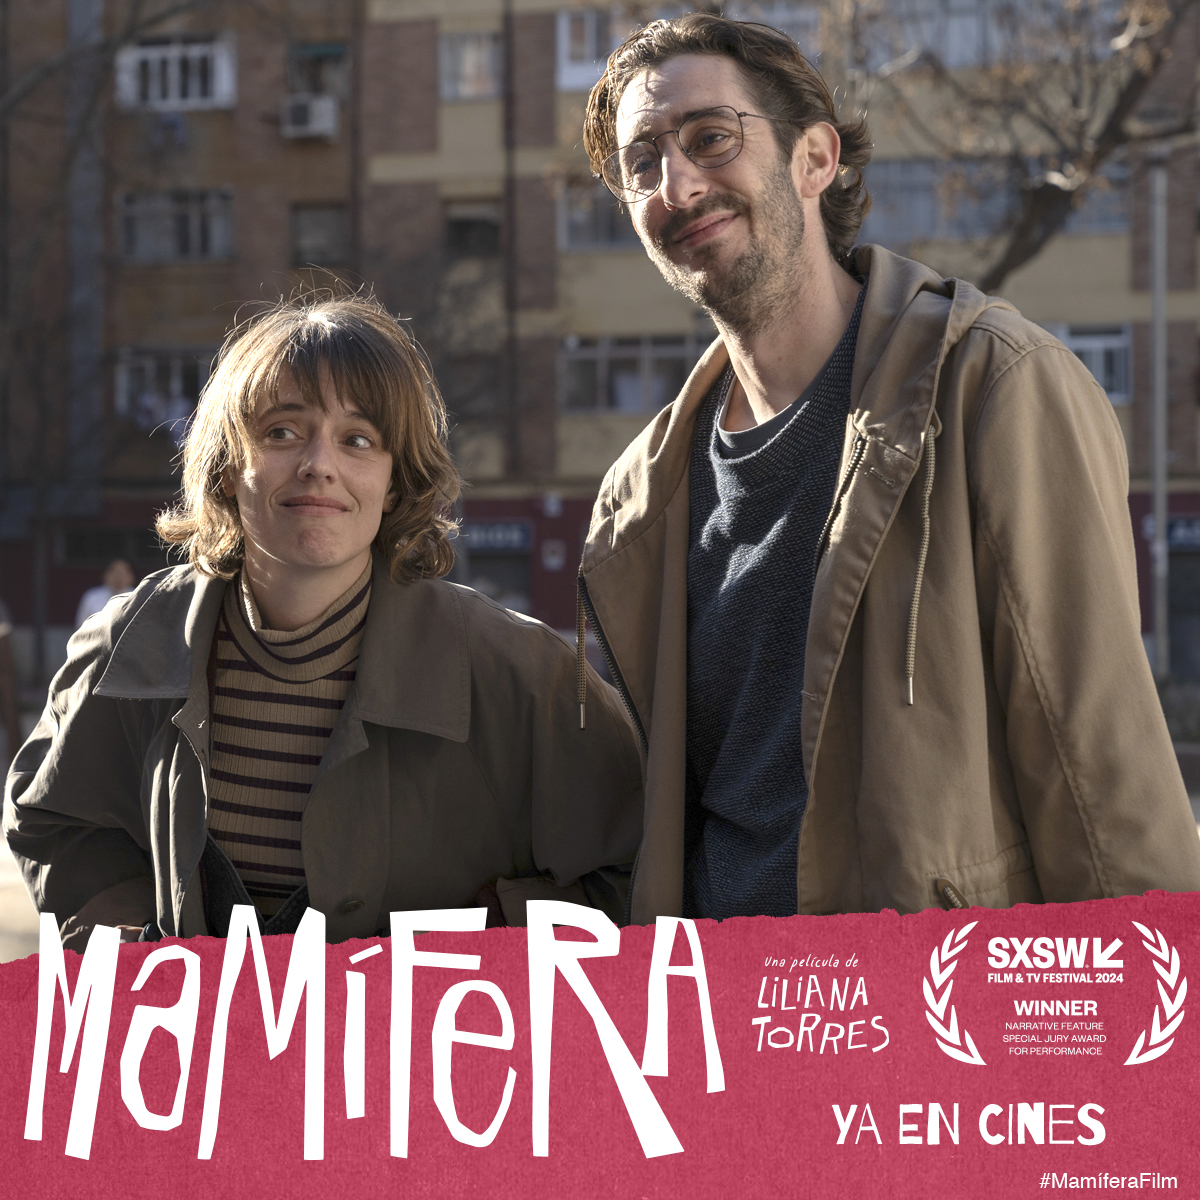 Esta pareja es de esas que dejan huella. 🥰 Maria Rodríguez Soto y Enric Auquer protagonizan #MamíferaFilm, una de las películas españolas más reconocidas y elogiadas del año. 🎬 Encuentra tu cine más cercano y emociónate esta semana 👉 bit.ly/cines-mamifera